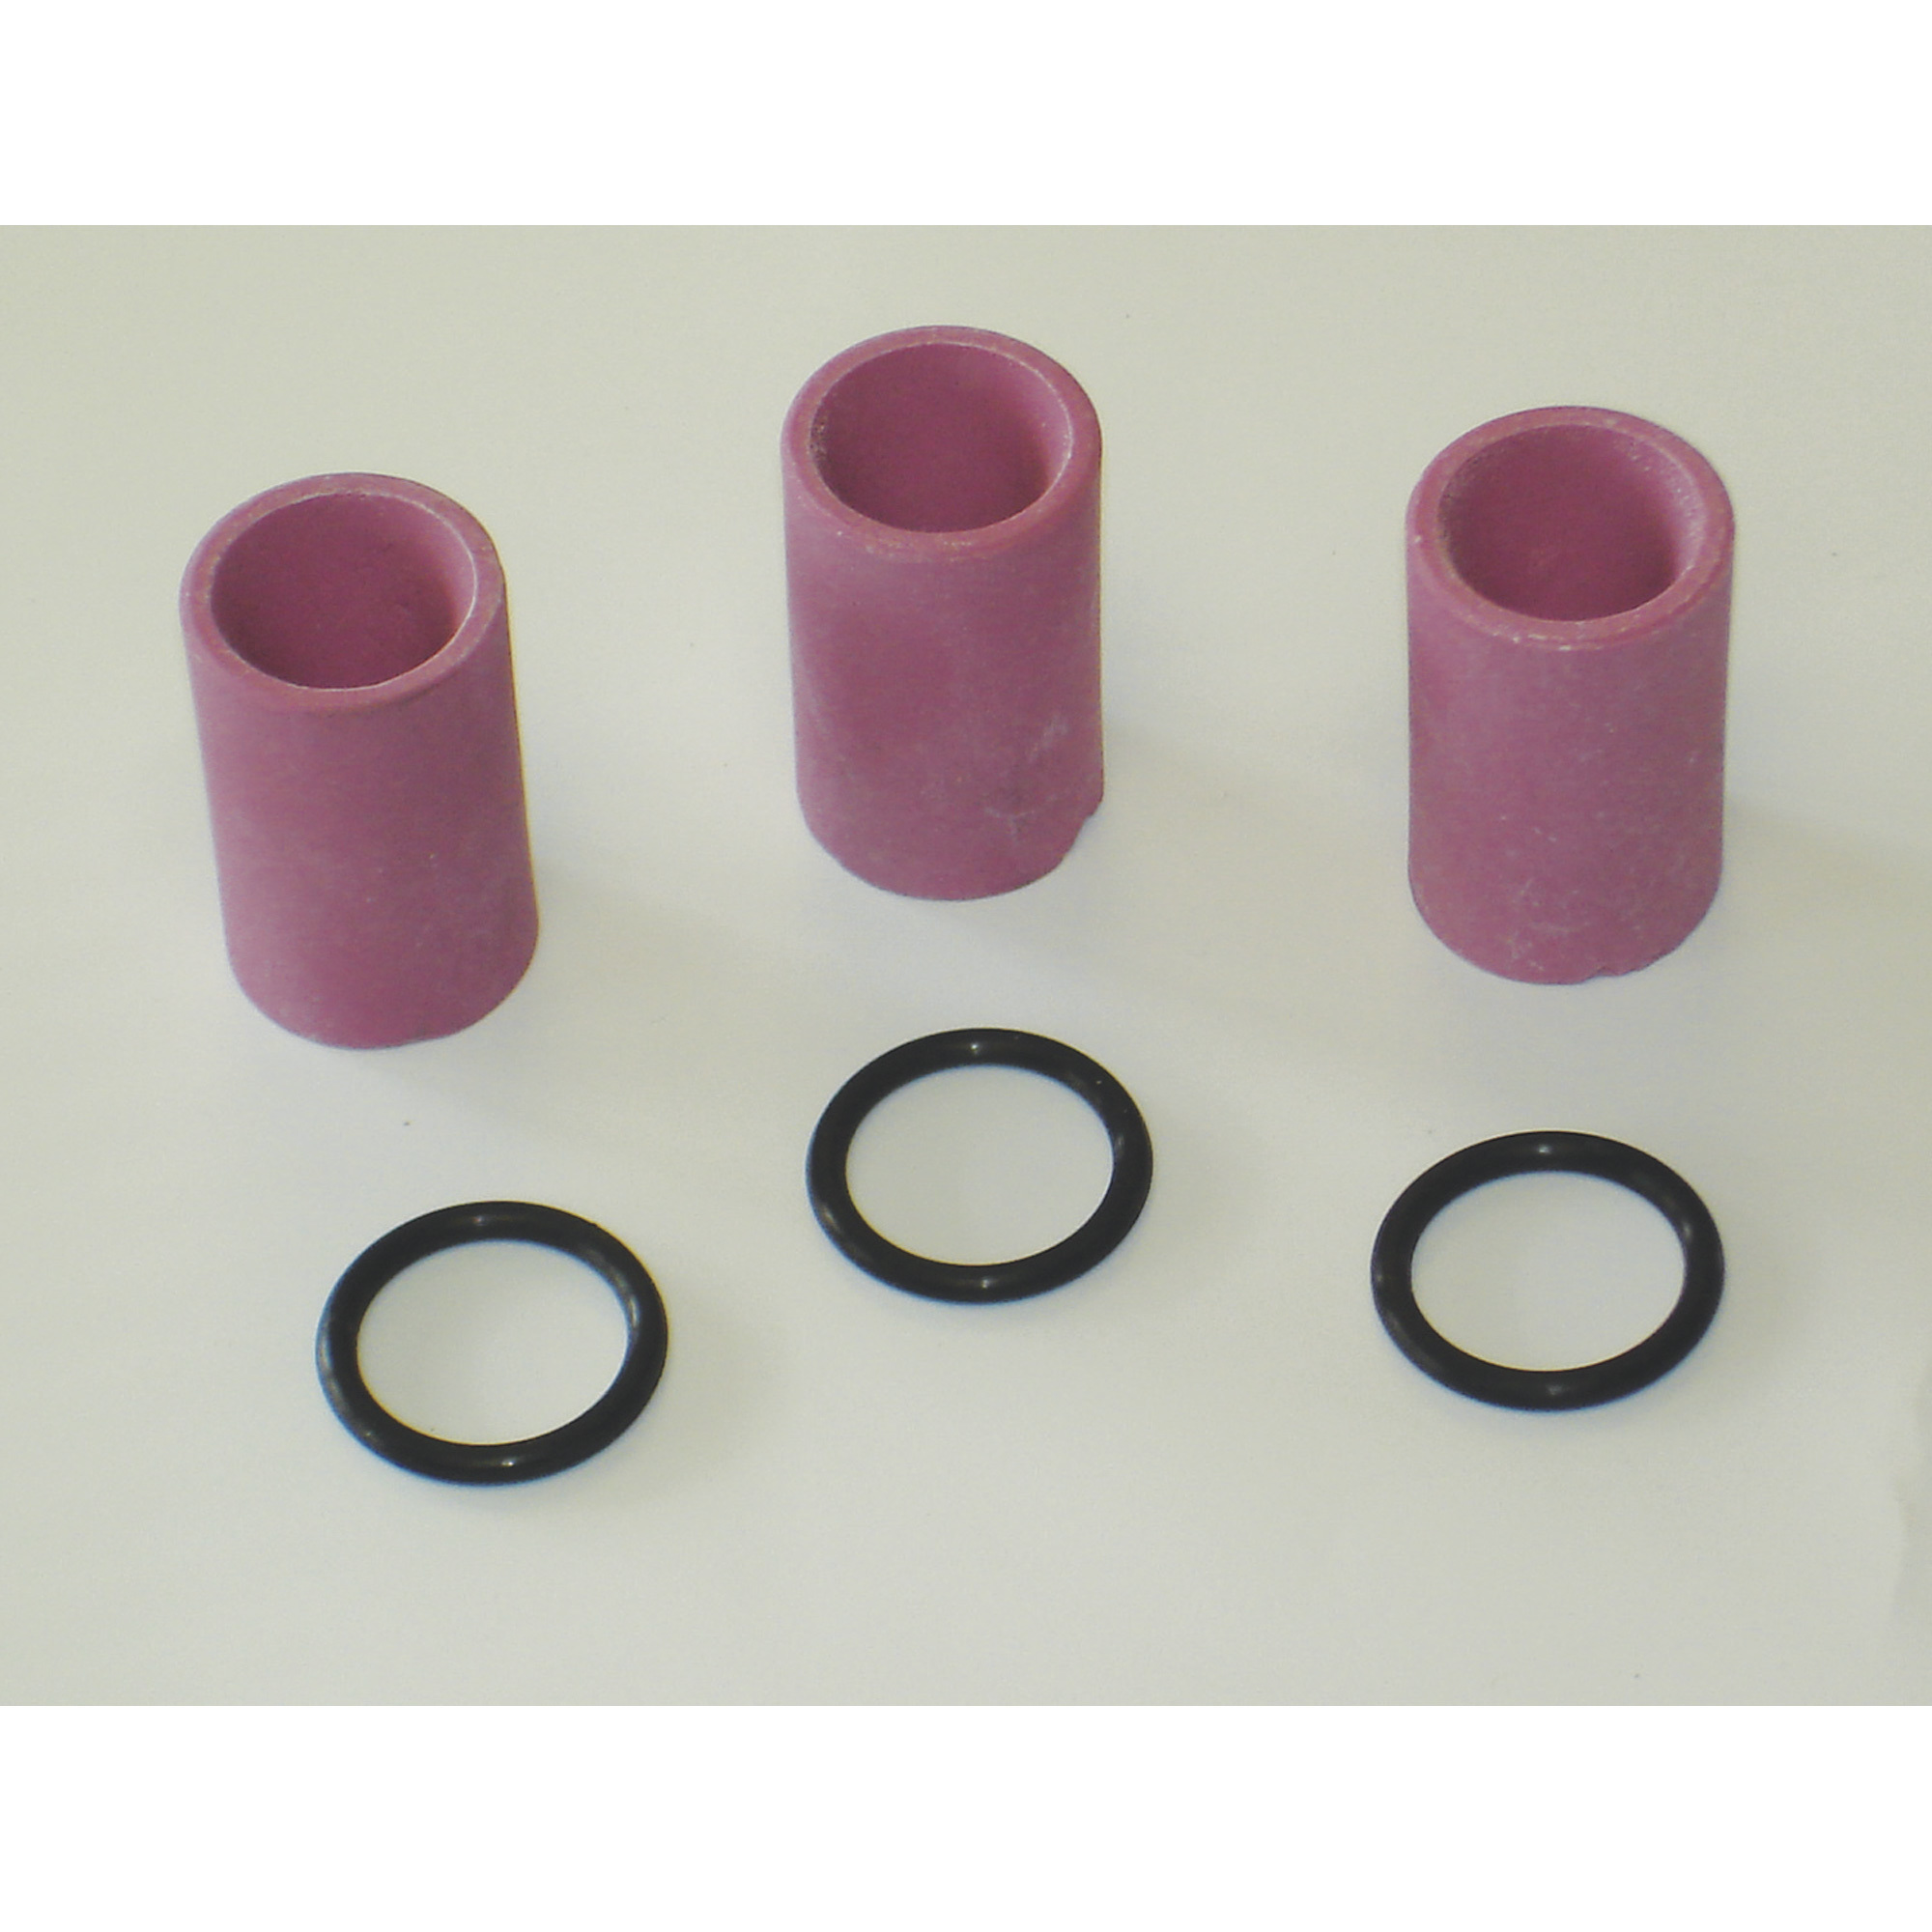 AllSource Abrasive Blaster Ceramic Nozzle Kit â 3-Pack, 7mm, Model 41912